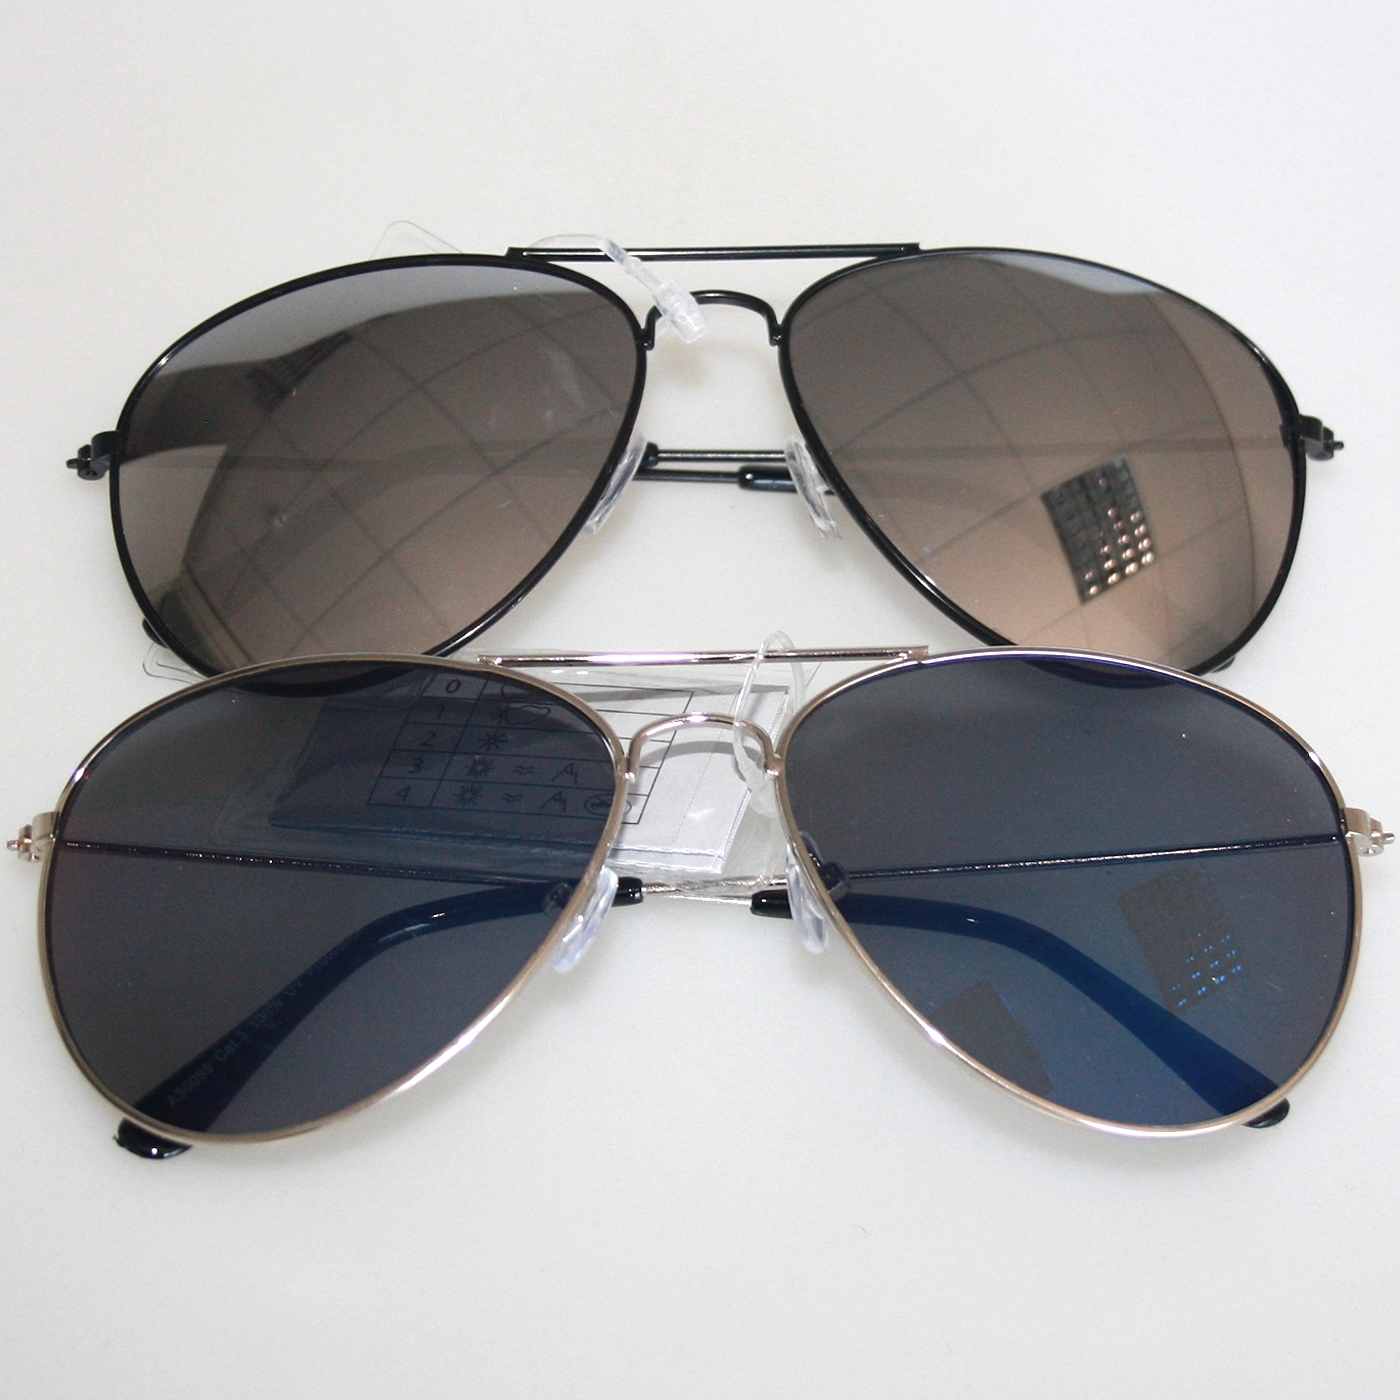 Sunglasses Pilot black frame (A30099) Sunglasses - Rigeshop